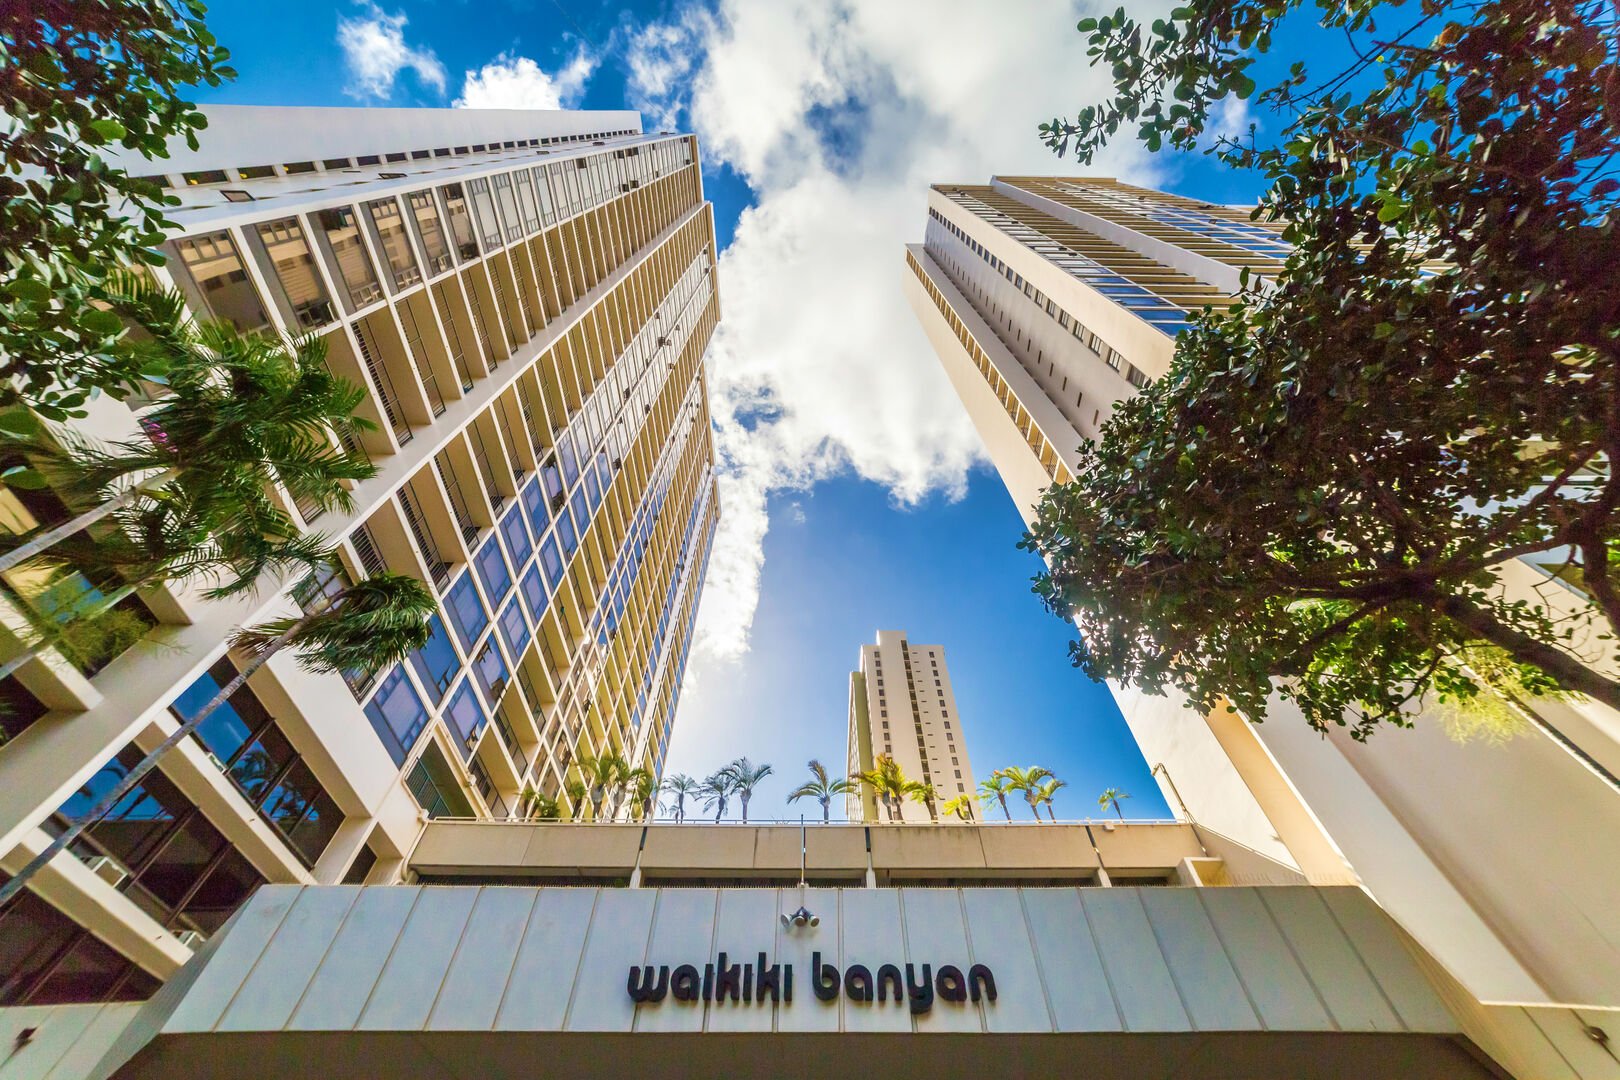 Waikiki Banyan facade